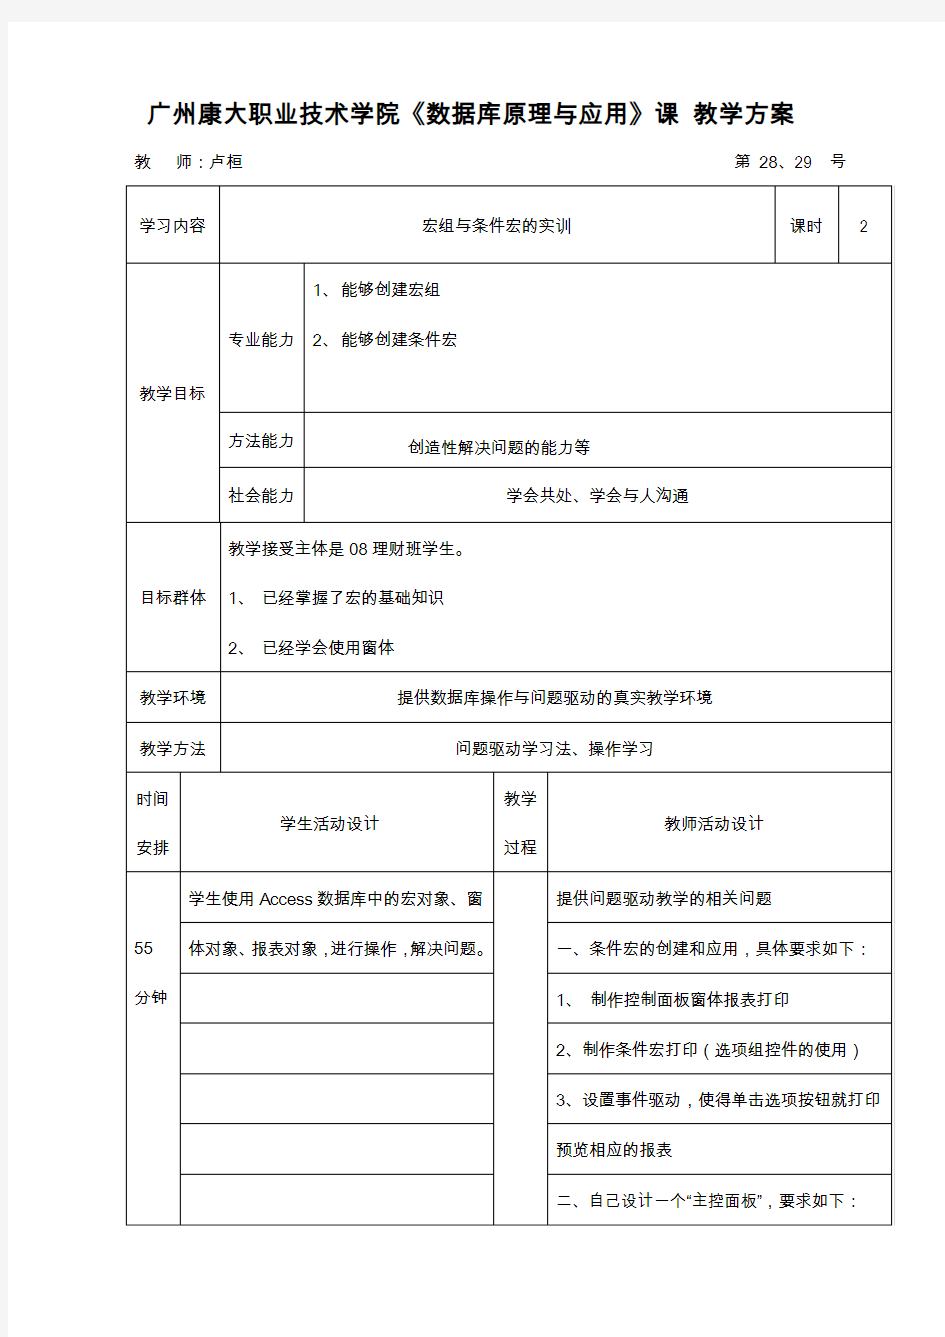 广州康大职业技术学院数据库原理与应用课教学方案